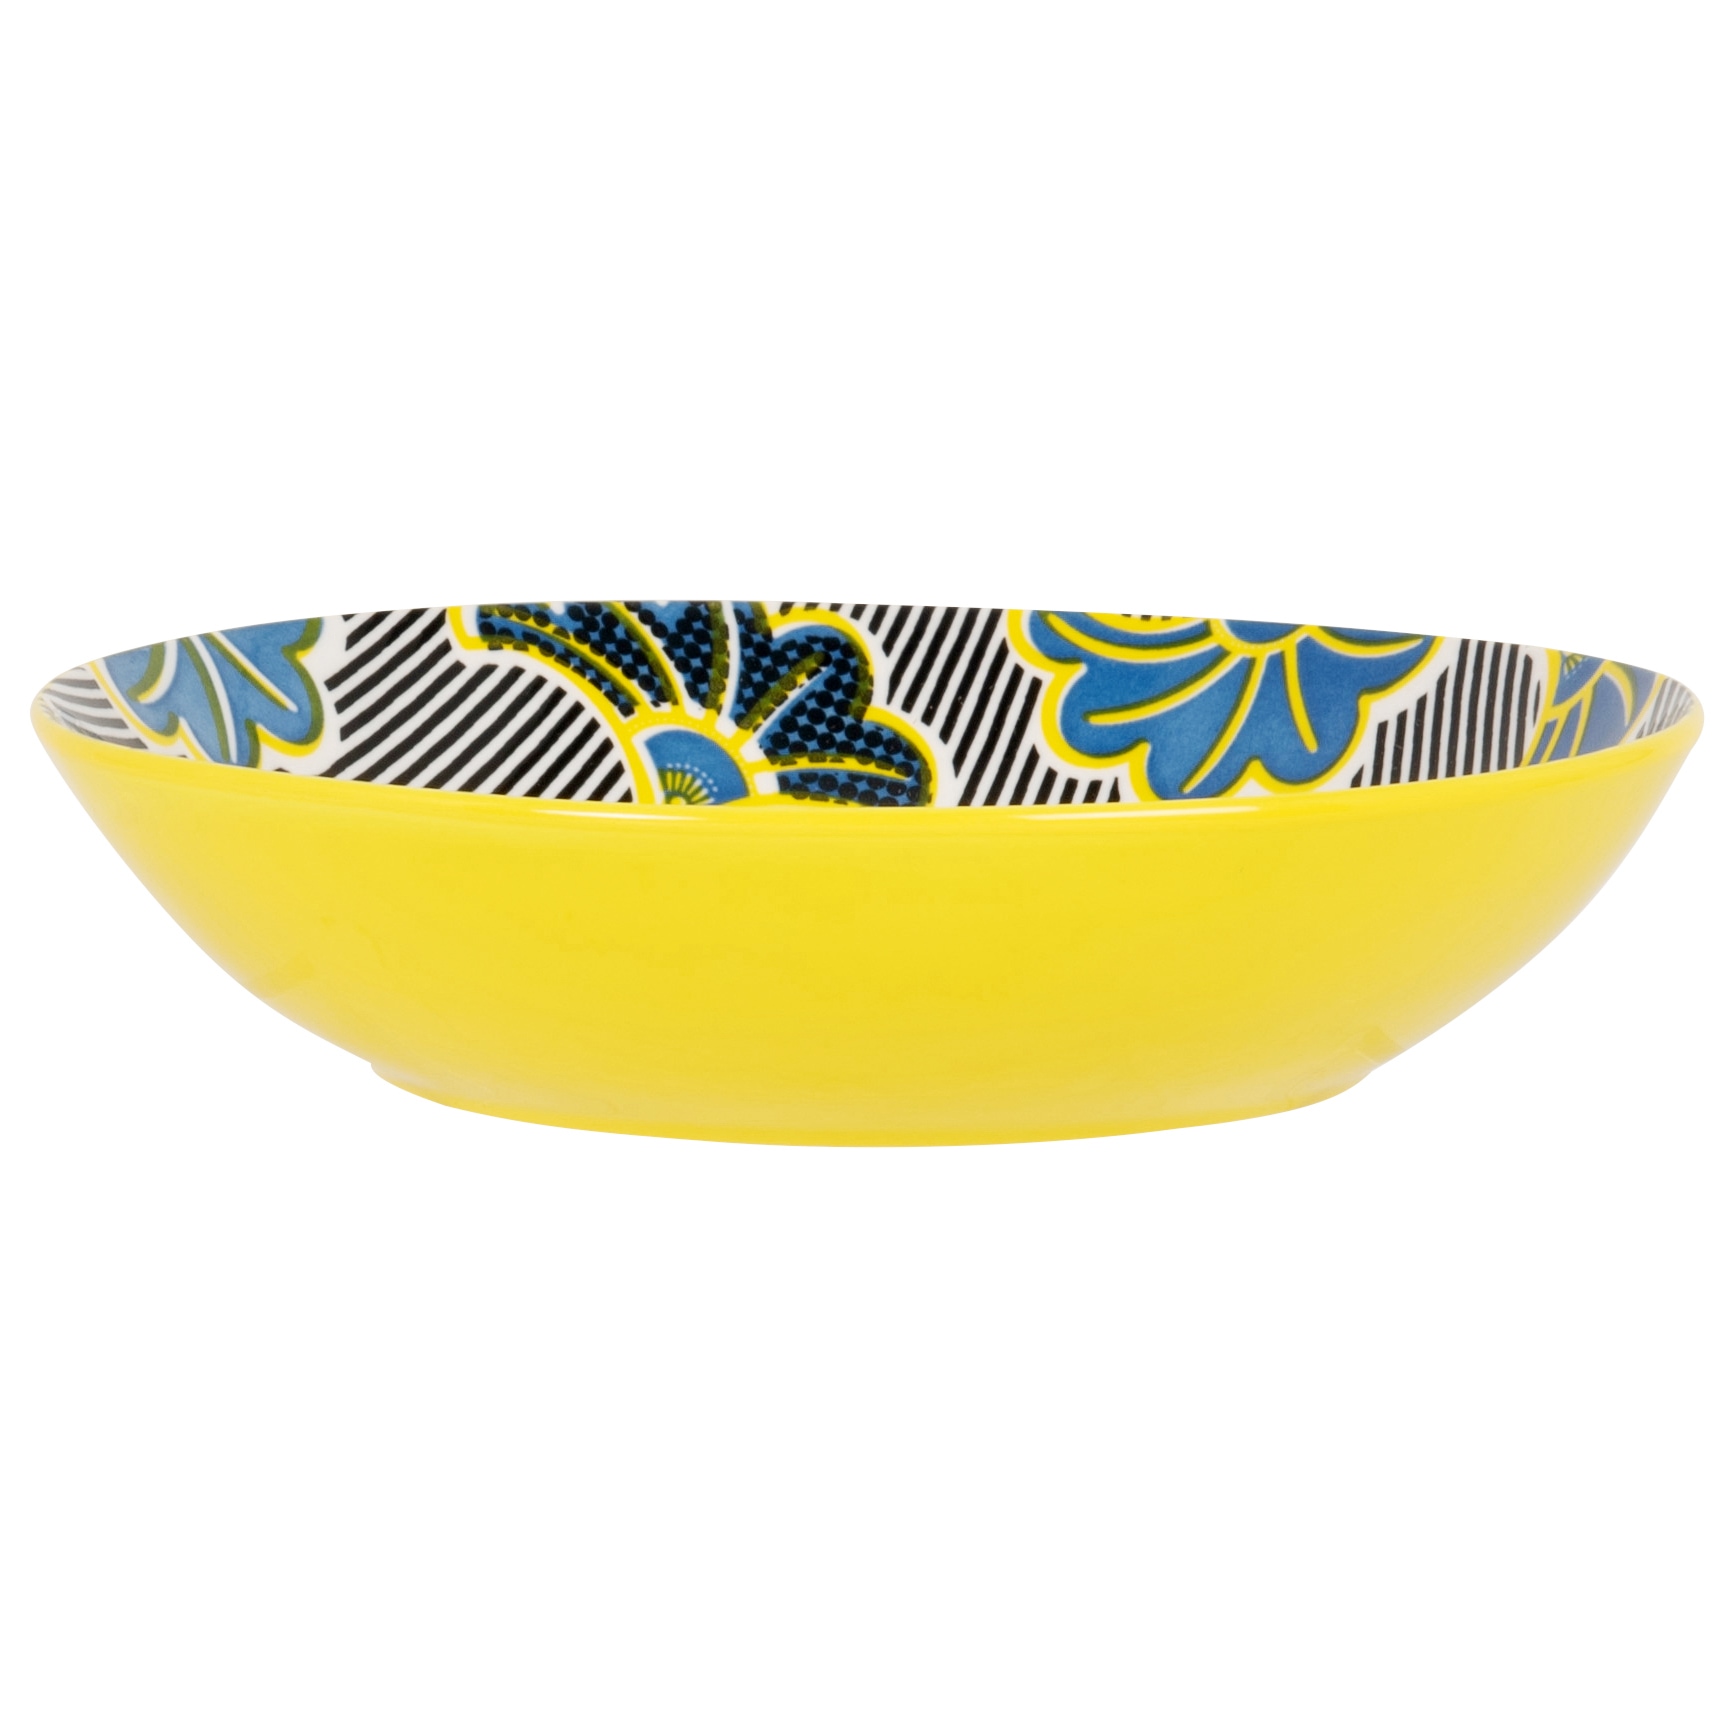 assiette creuse en porcelaine jaune, bleue et noire motif floral